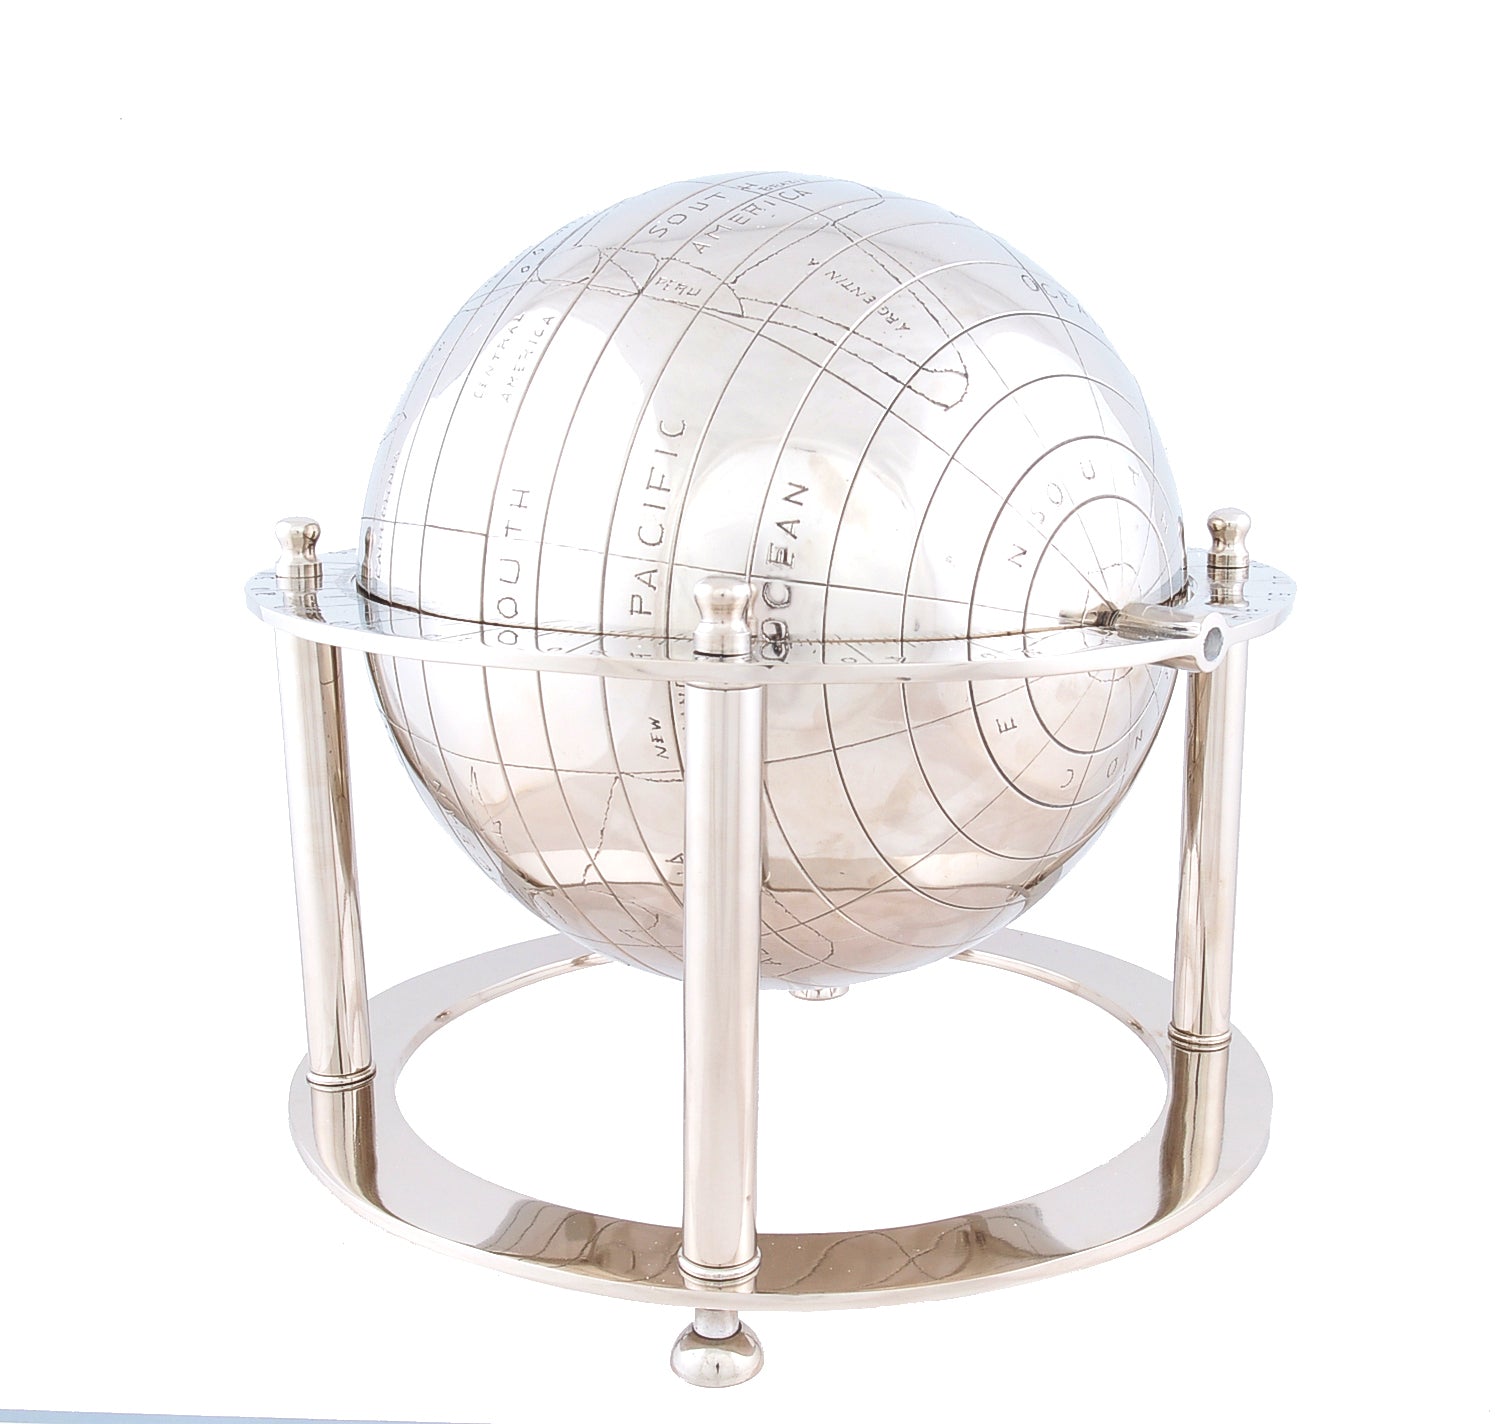 16" X 16" X 15" Aluminium Globe